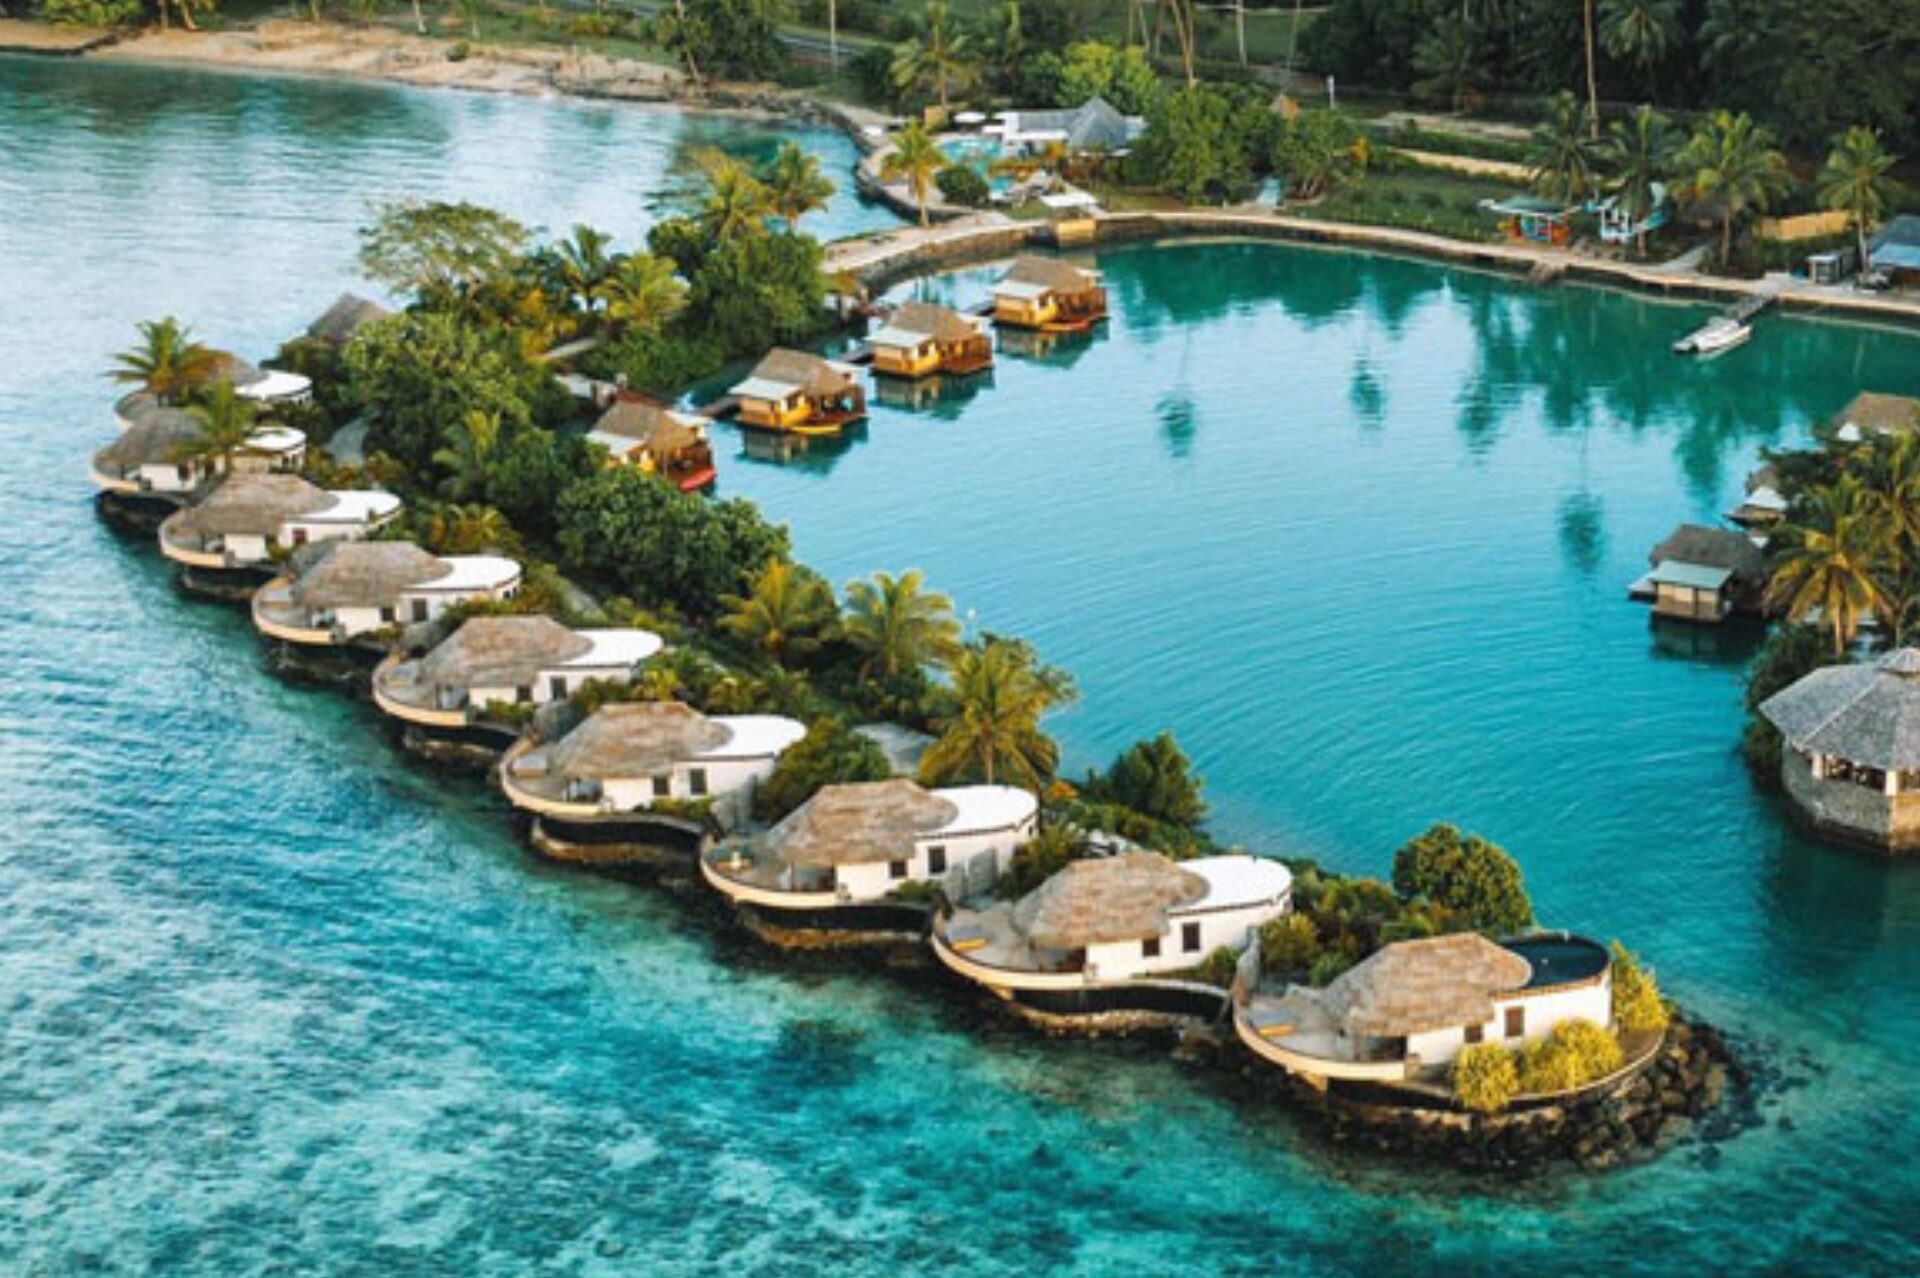 Koro Sun Resort in Fiji (the Rainforest One)